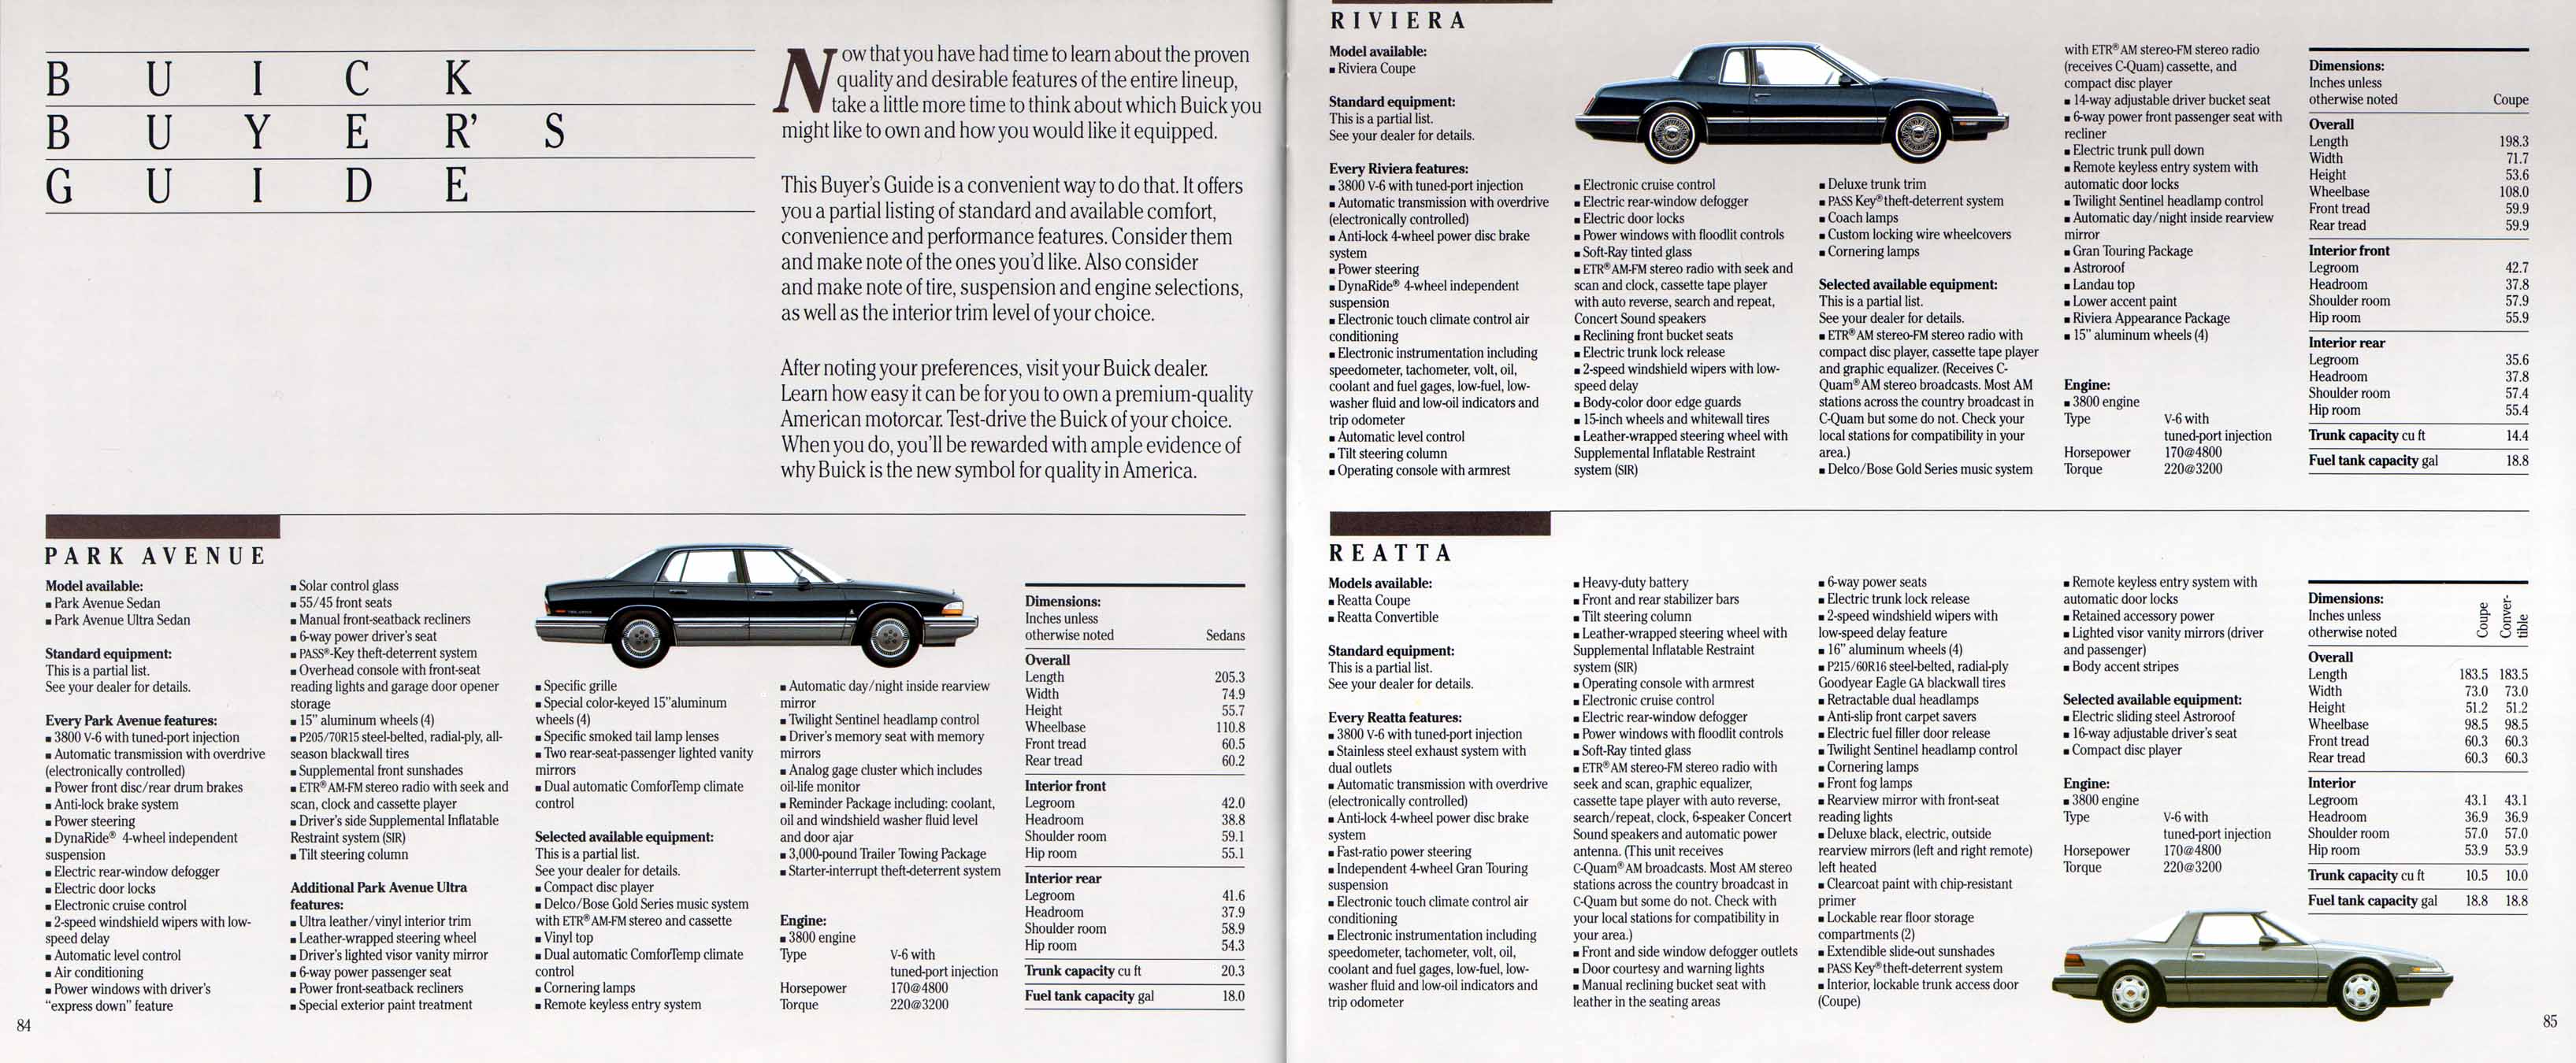 1991 Buick Full Line Prestige-86-87